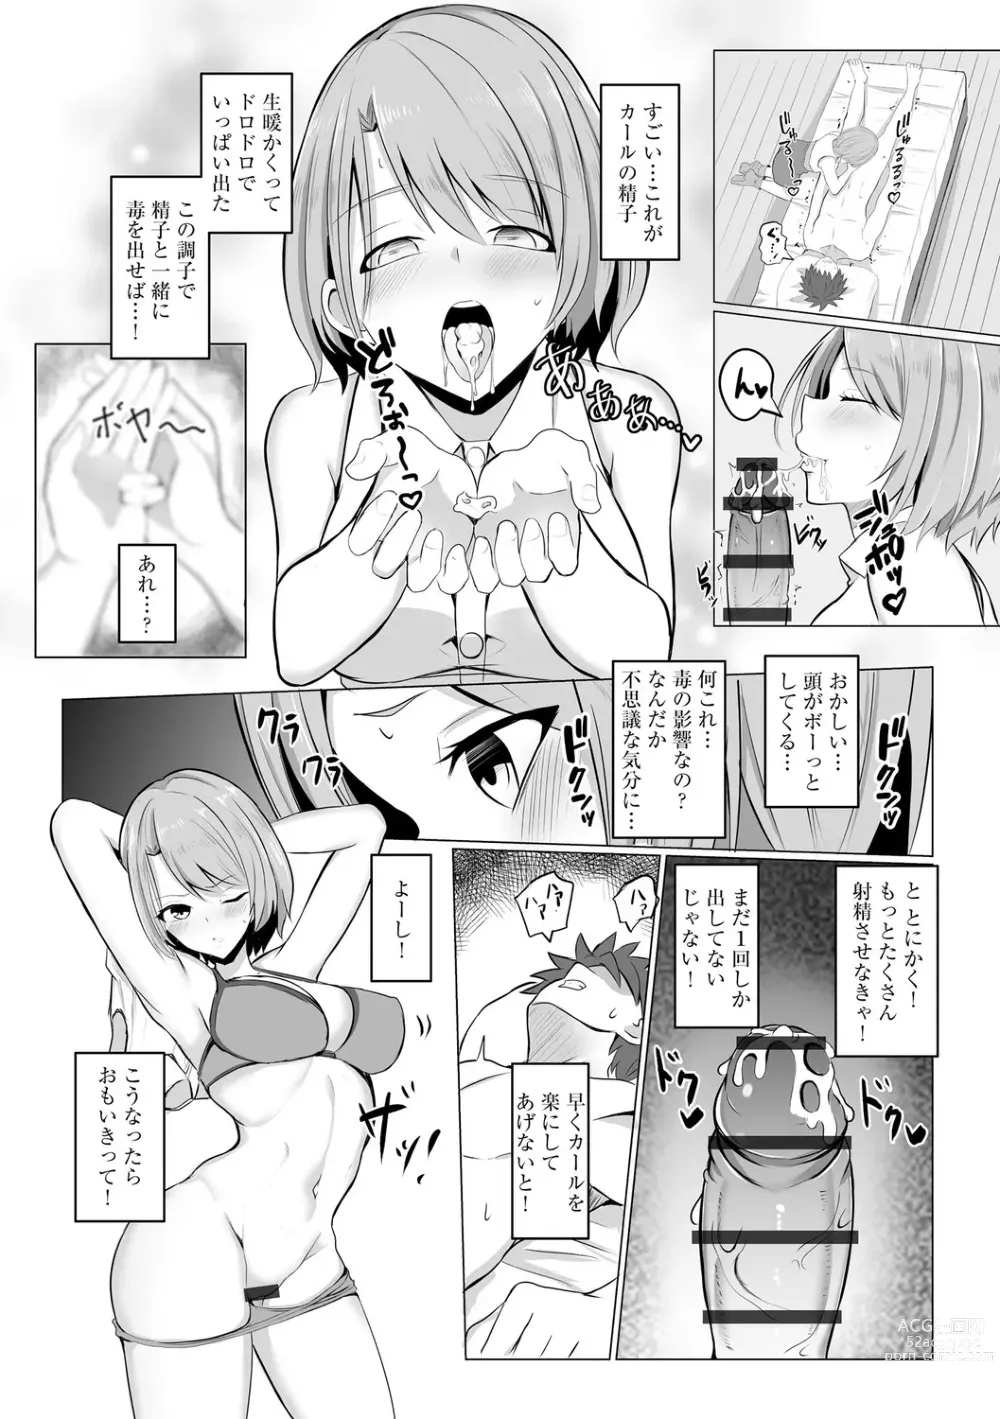 Page 16 of manga Watashi ga Inma ni Ochiru made